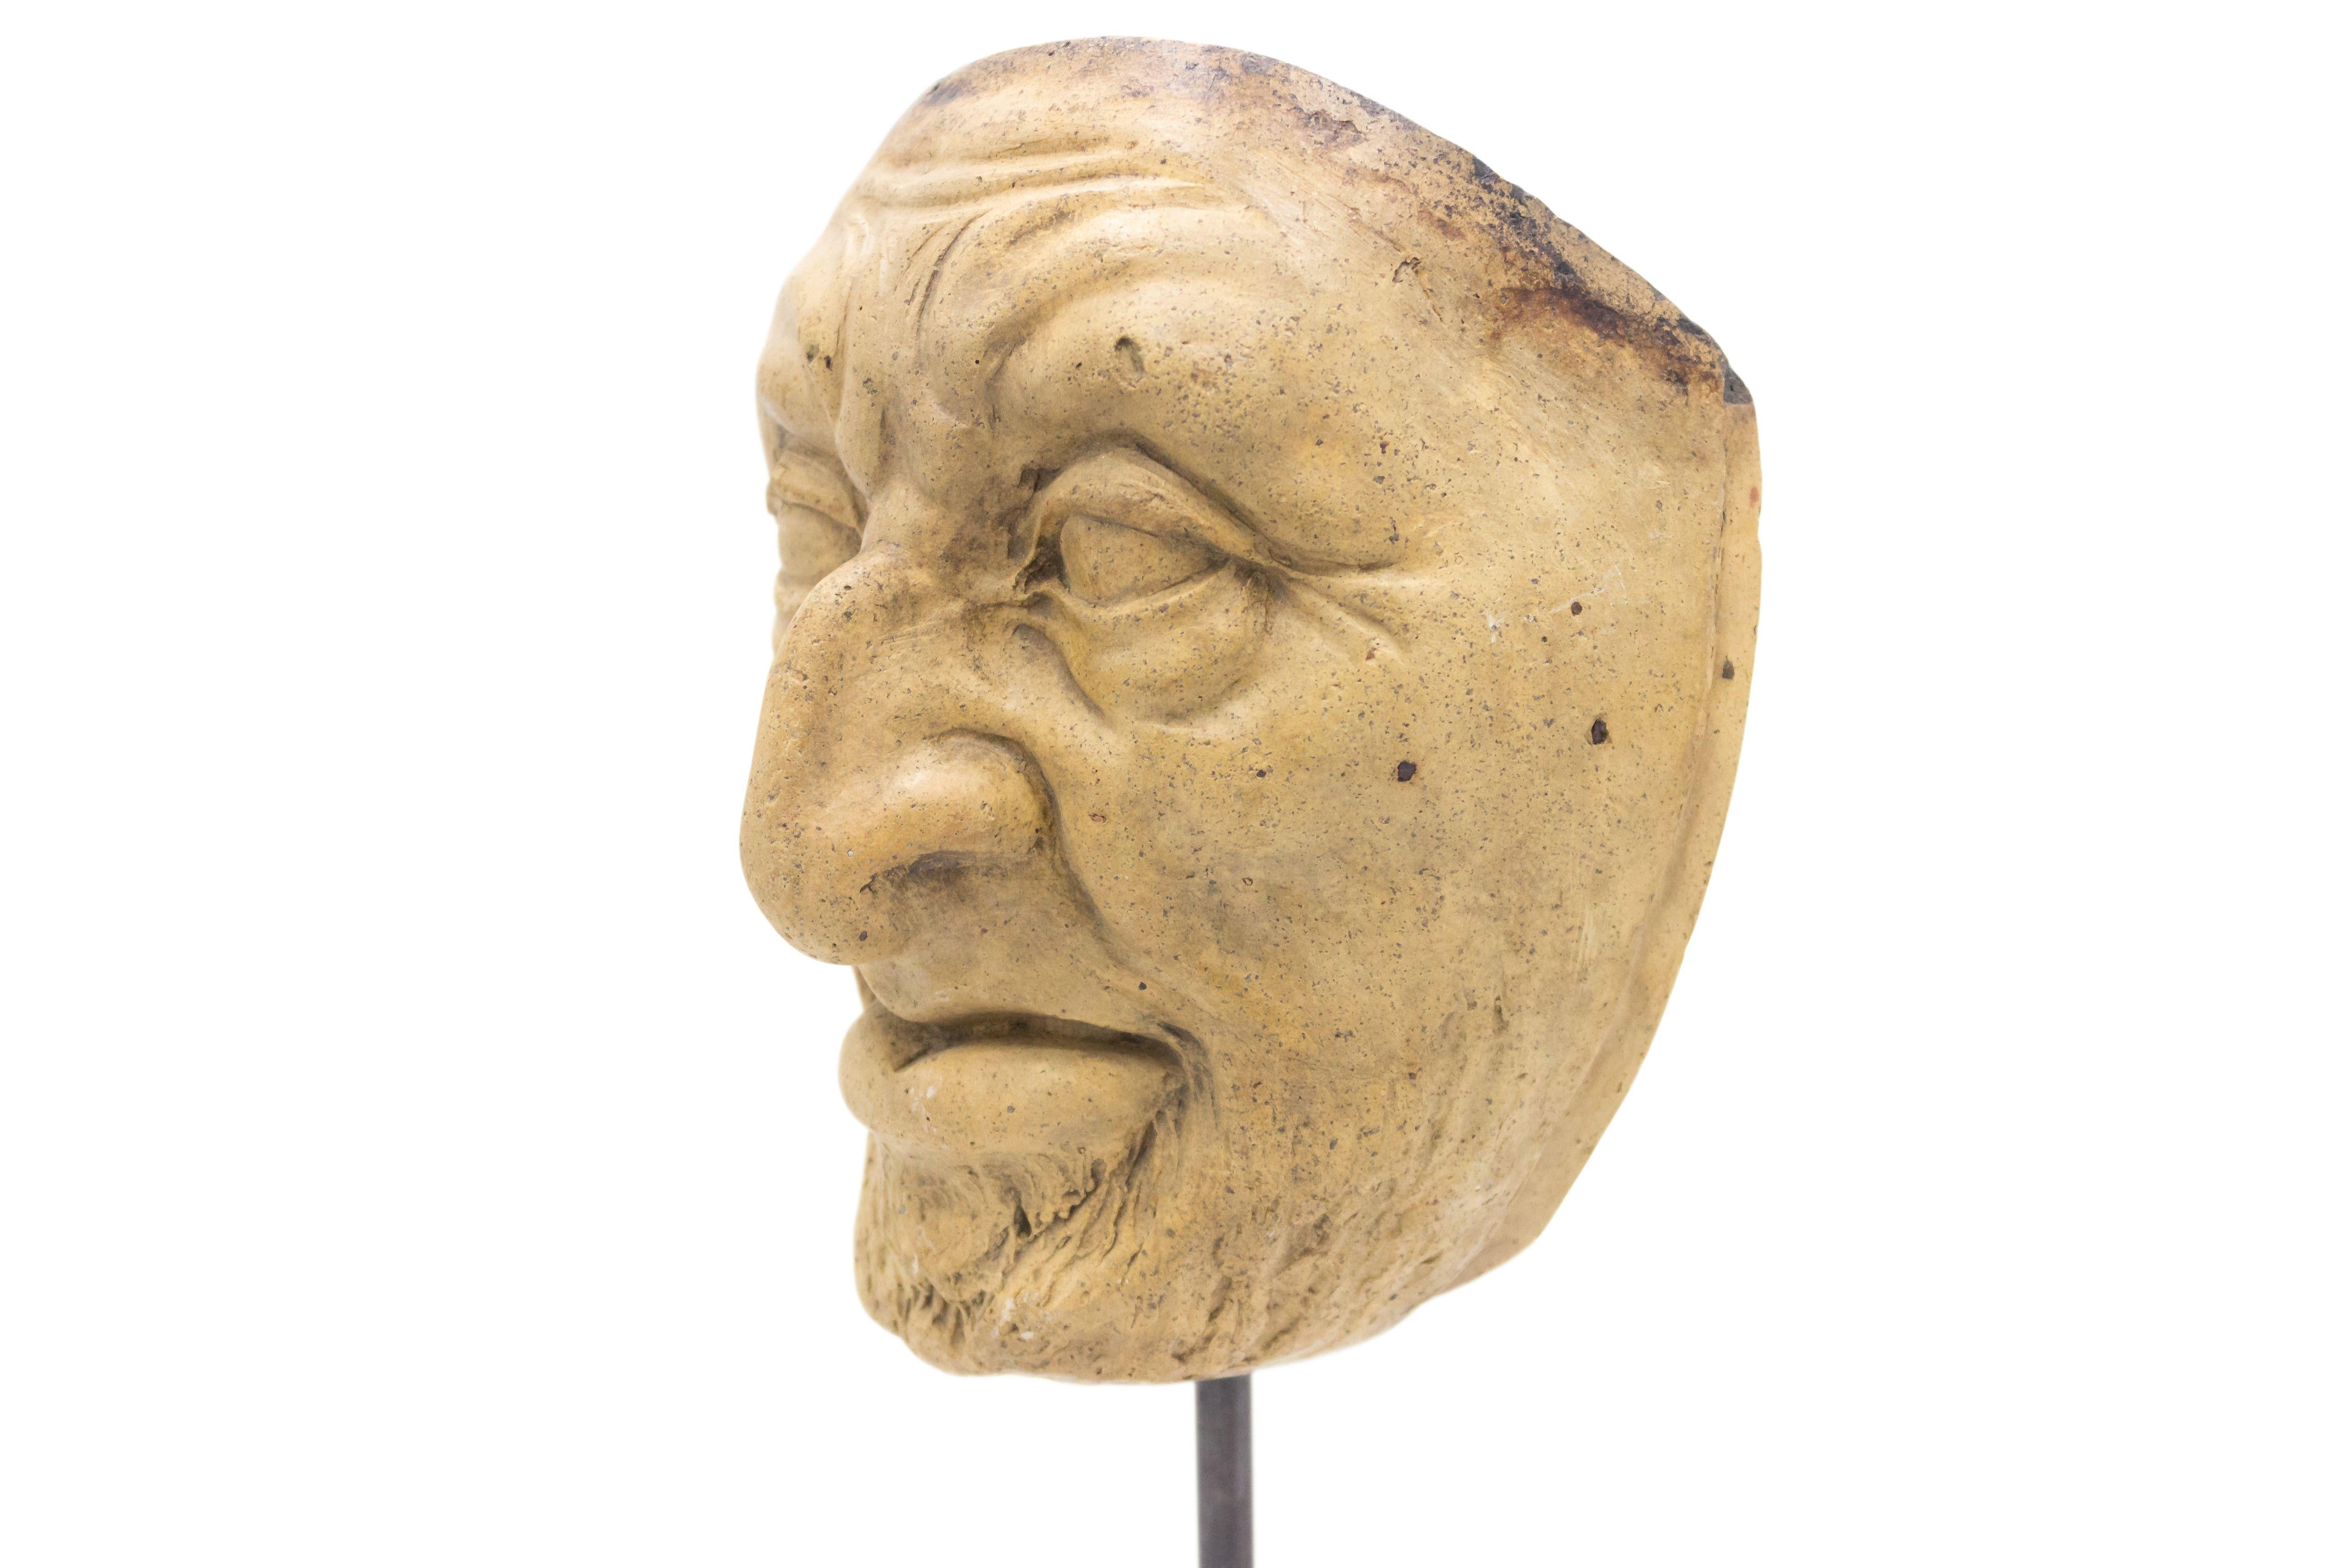 Moule de masque de maître en terre cuite sculpté en Allemagne continentale (fin du XIXe siècle) représentant un vieil homme grimaçant au nez crochu et à la barbe, présenté sur un socle carré en marbre noir (faisant partie d'une collection).
 